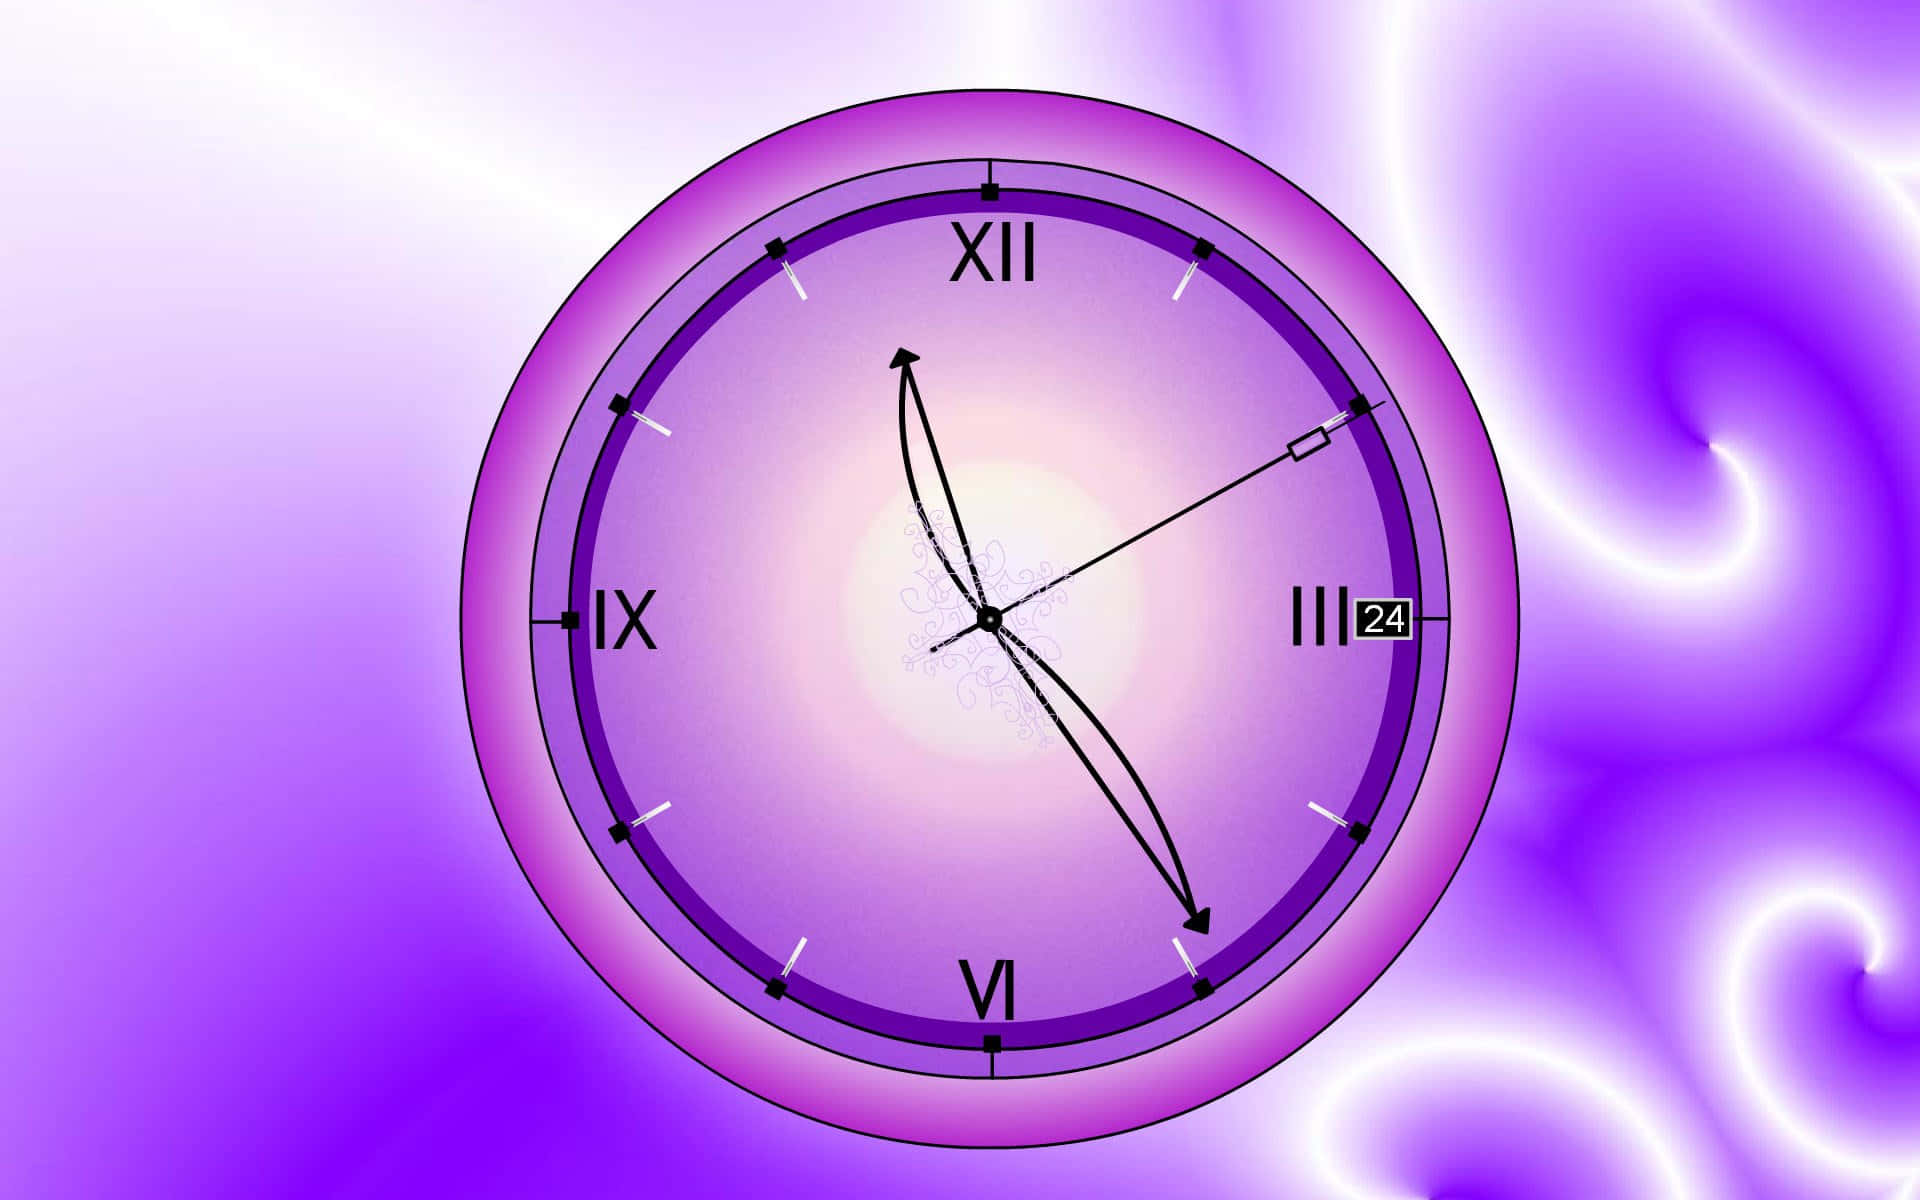 Картинка часы на телефон. Заставка на часы. Часы на фиолетовом фоне. Часы на красивом фоне. Живые обои часы.